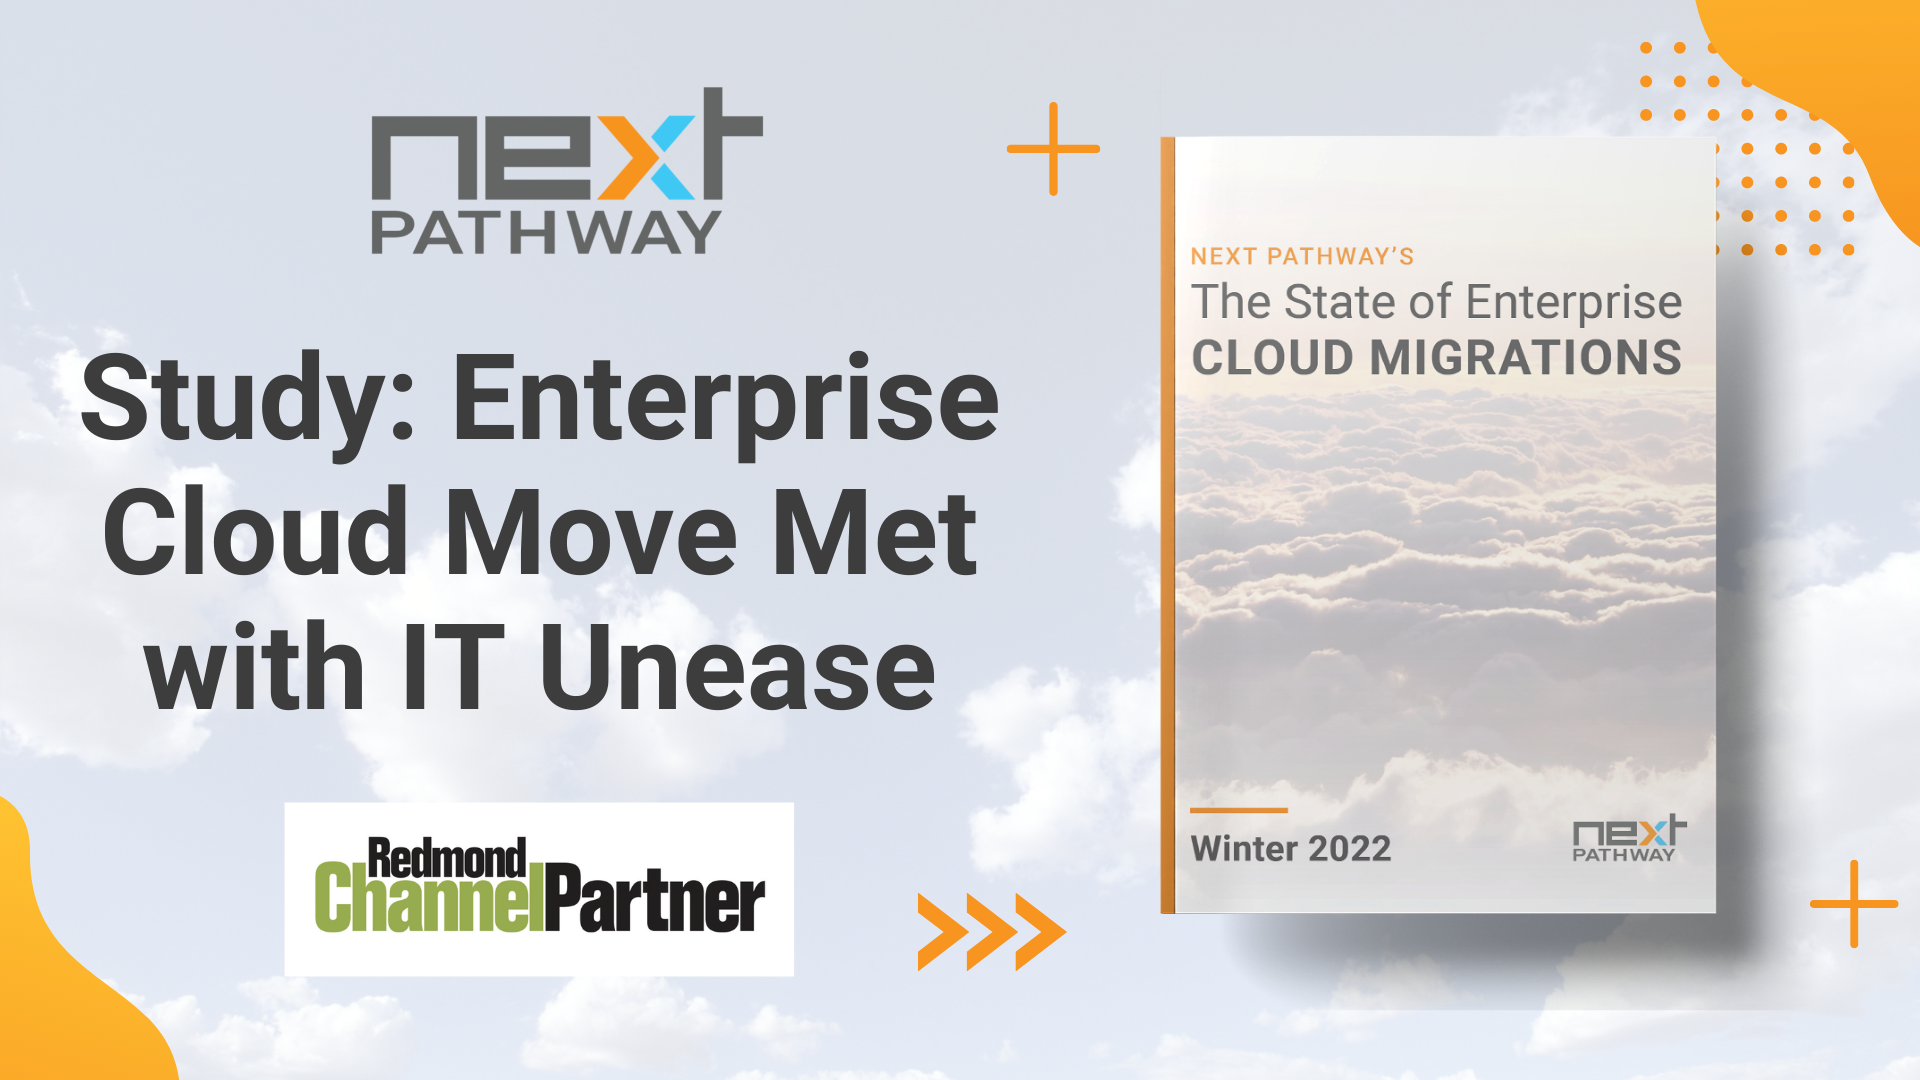 Redmond Channel Partner Enterprise Ready Cloud Migration